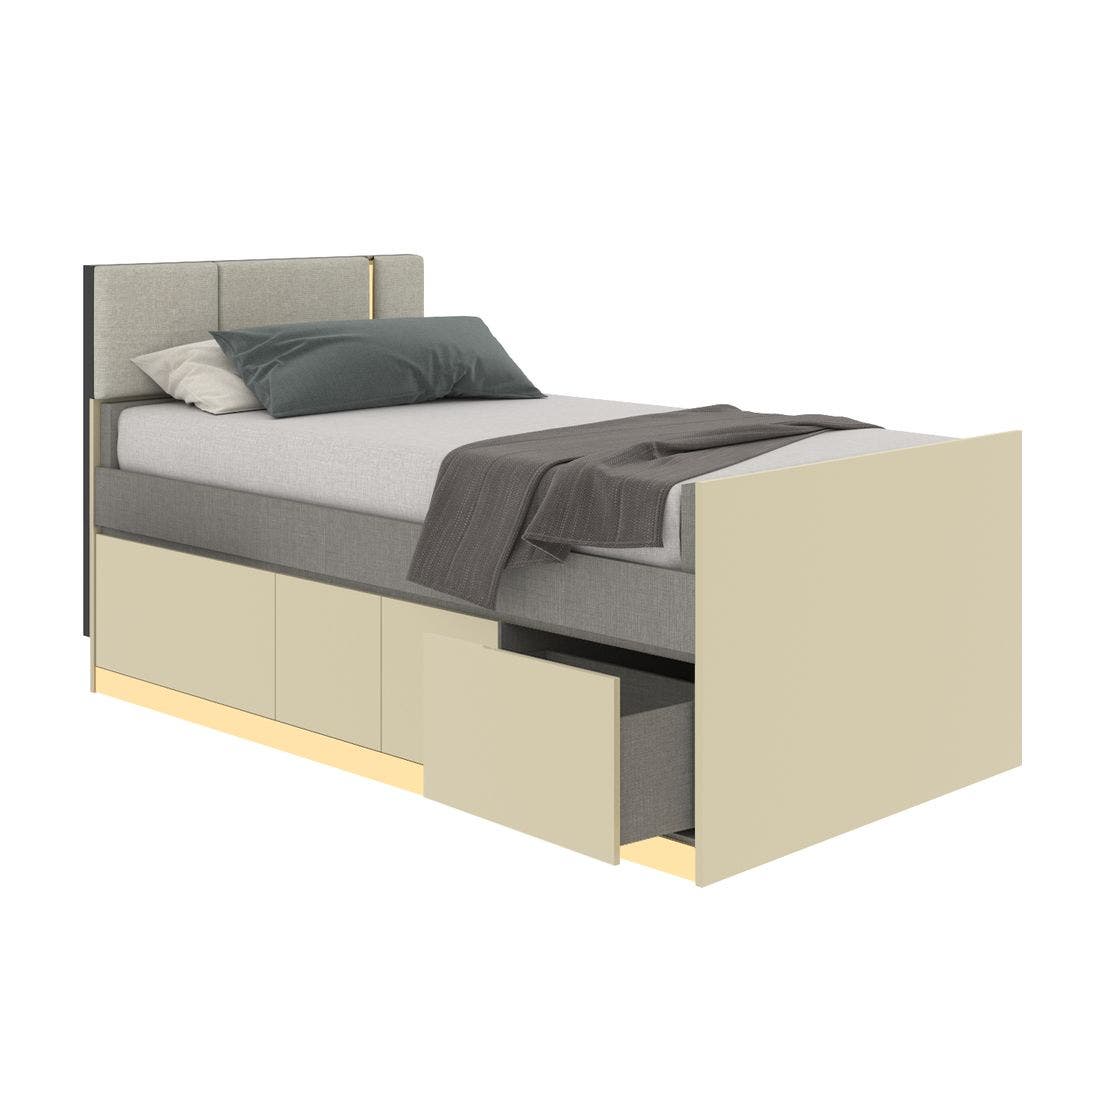 19203279-blisz-furniture-bedroom-furniture-beds-06